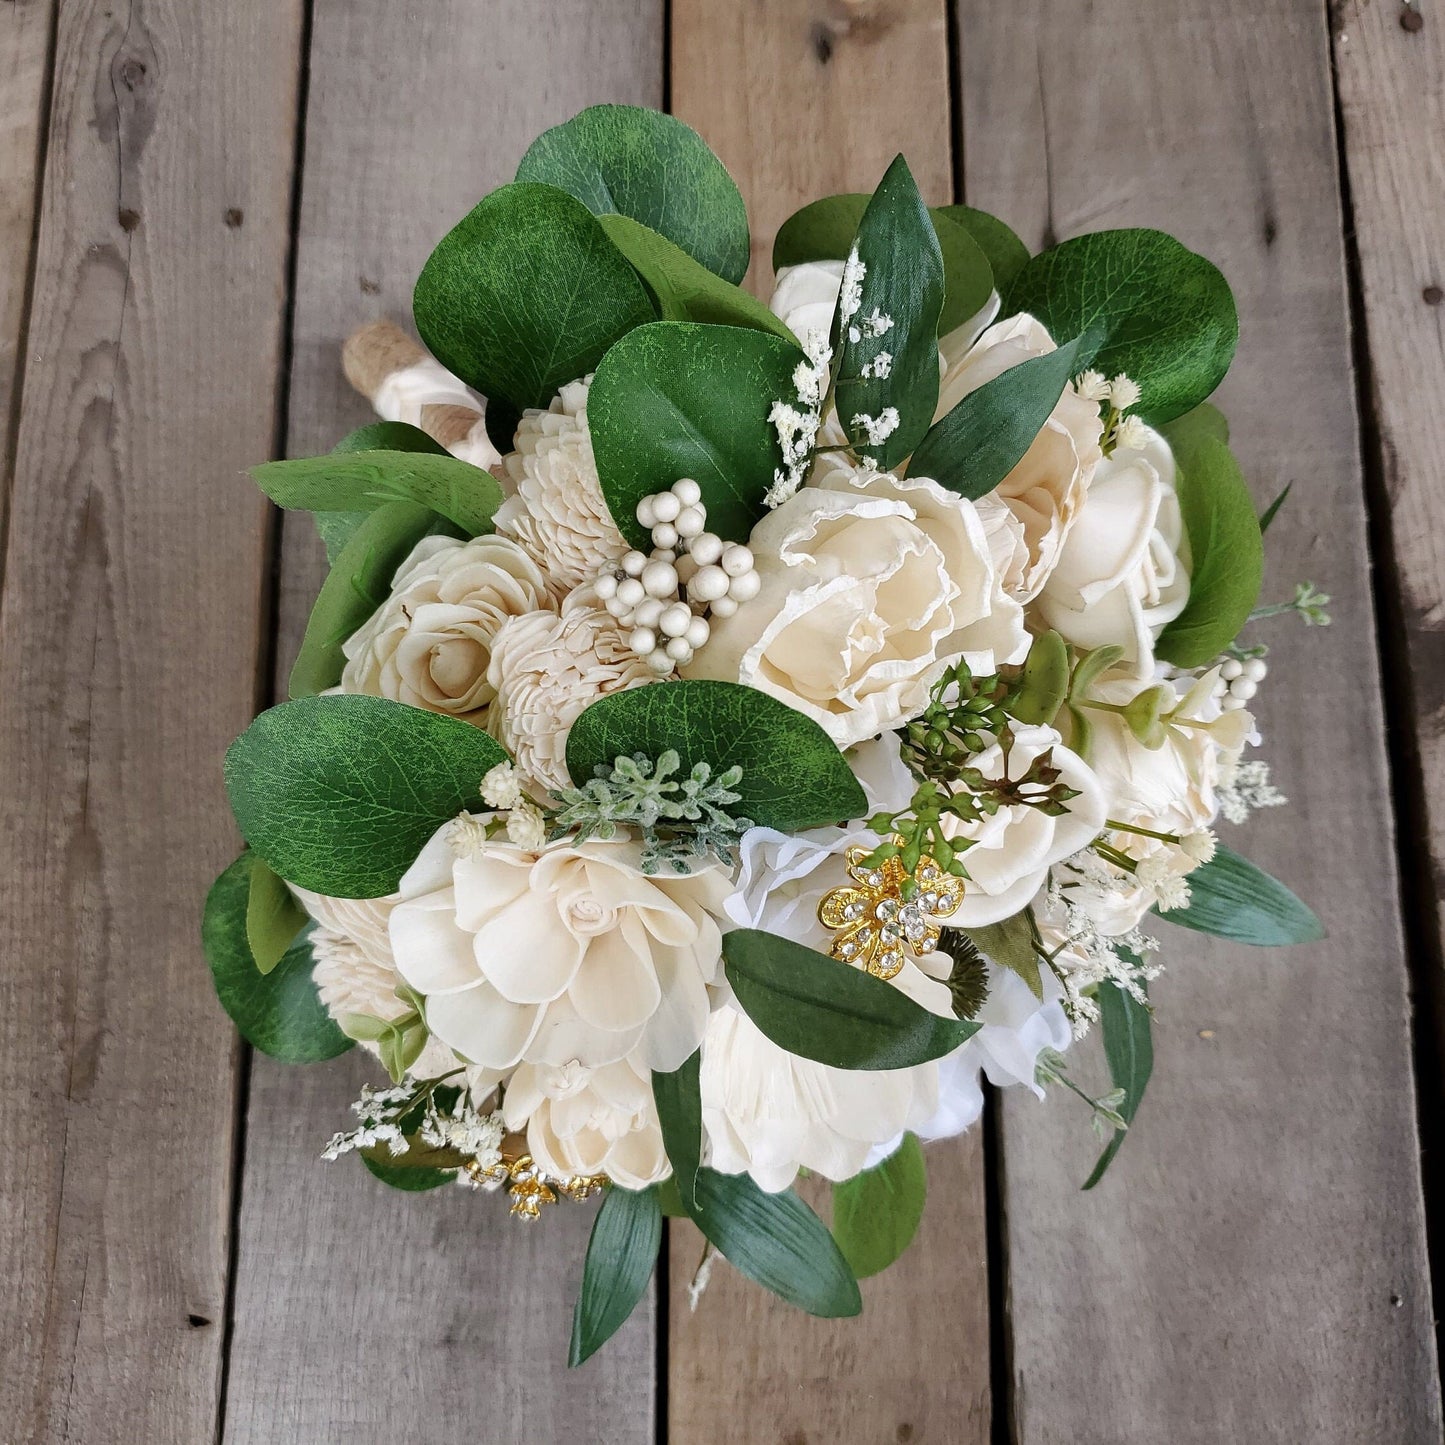 Wood Flower Bridal Bouquet, Wedding Brooch Bouquet, Wooden Flowers Bouquet, Bride Bouquet, Wedding Florals